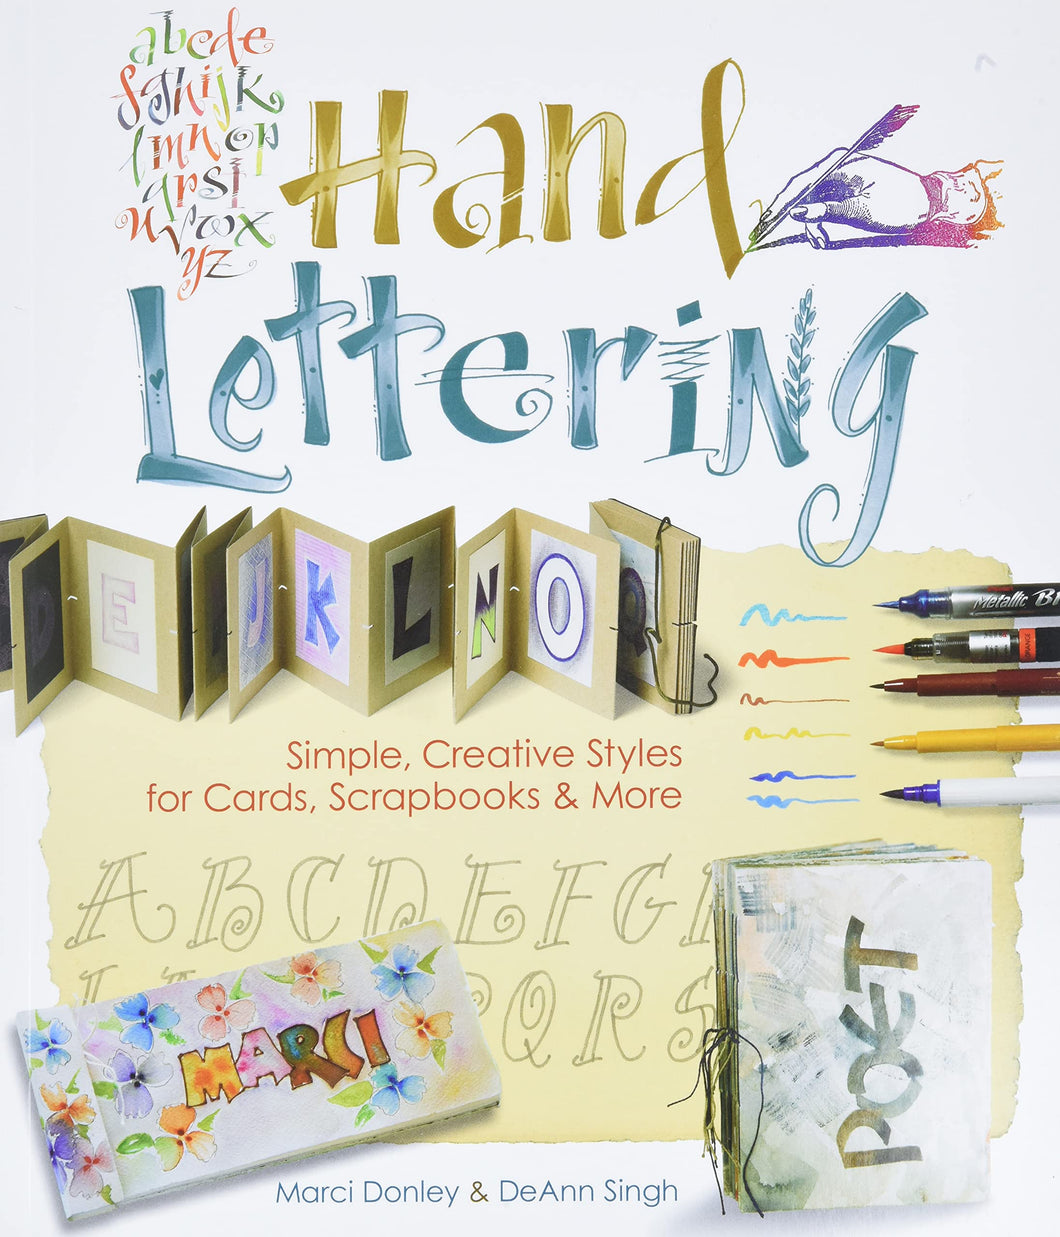 Hand Lettering by Marci Donley & DeAnn Singh